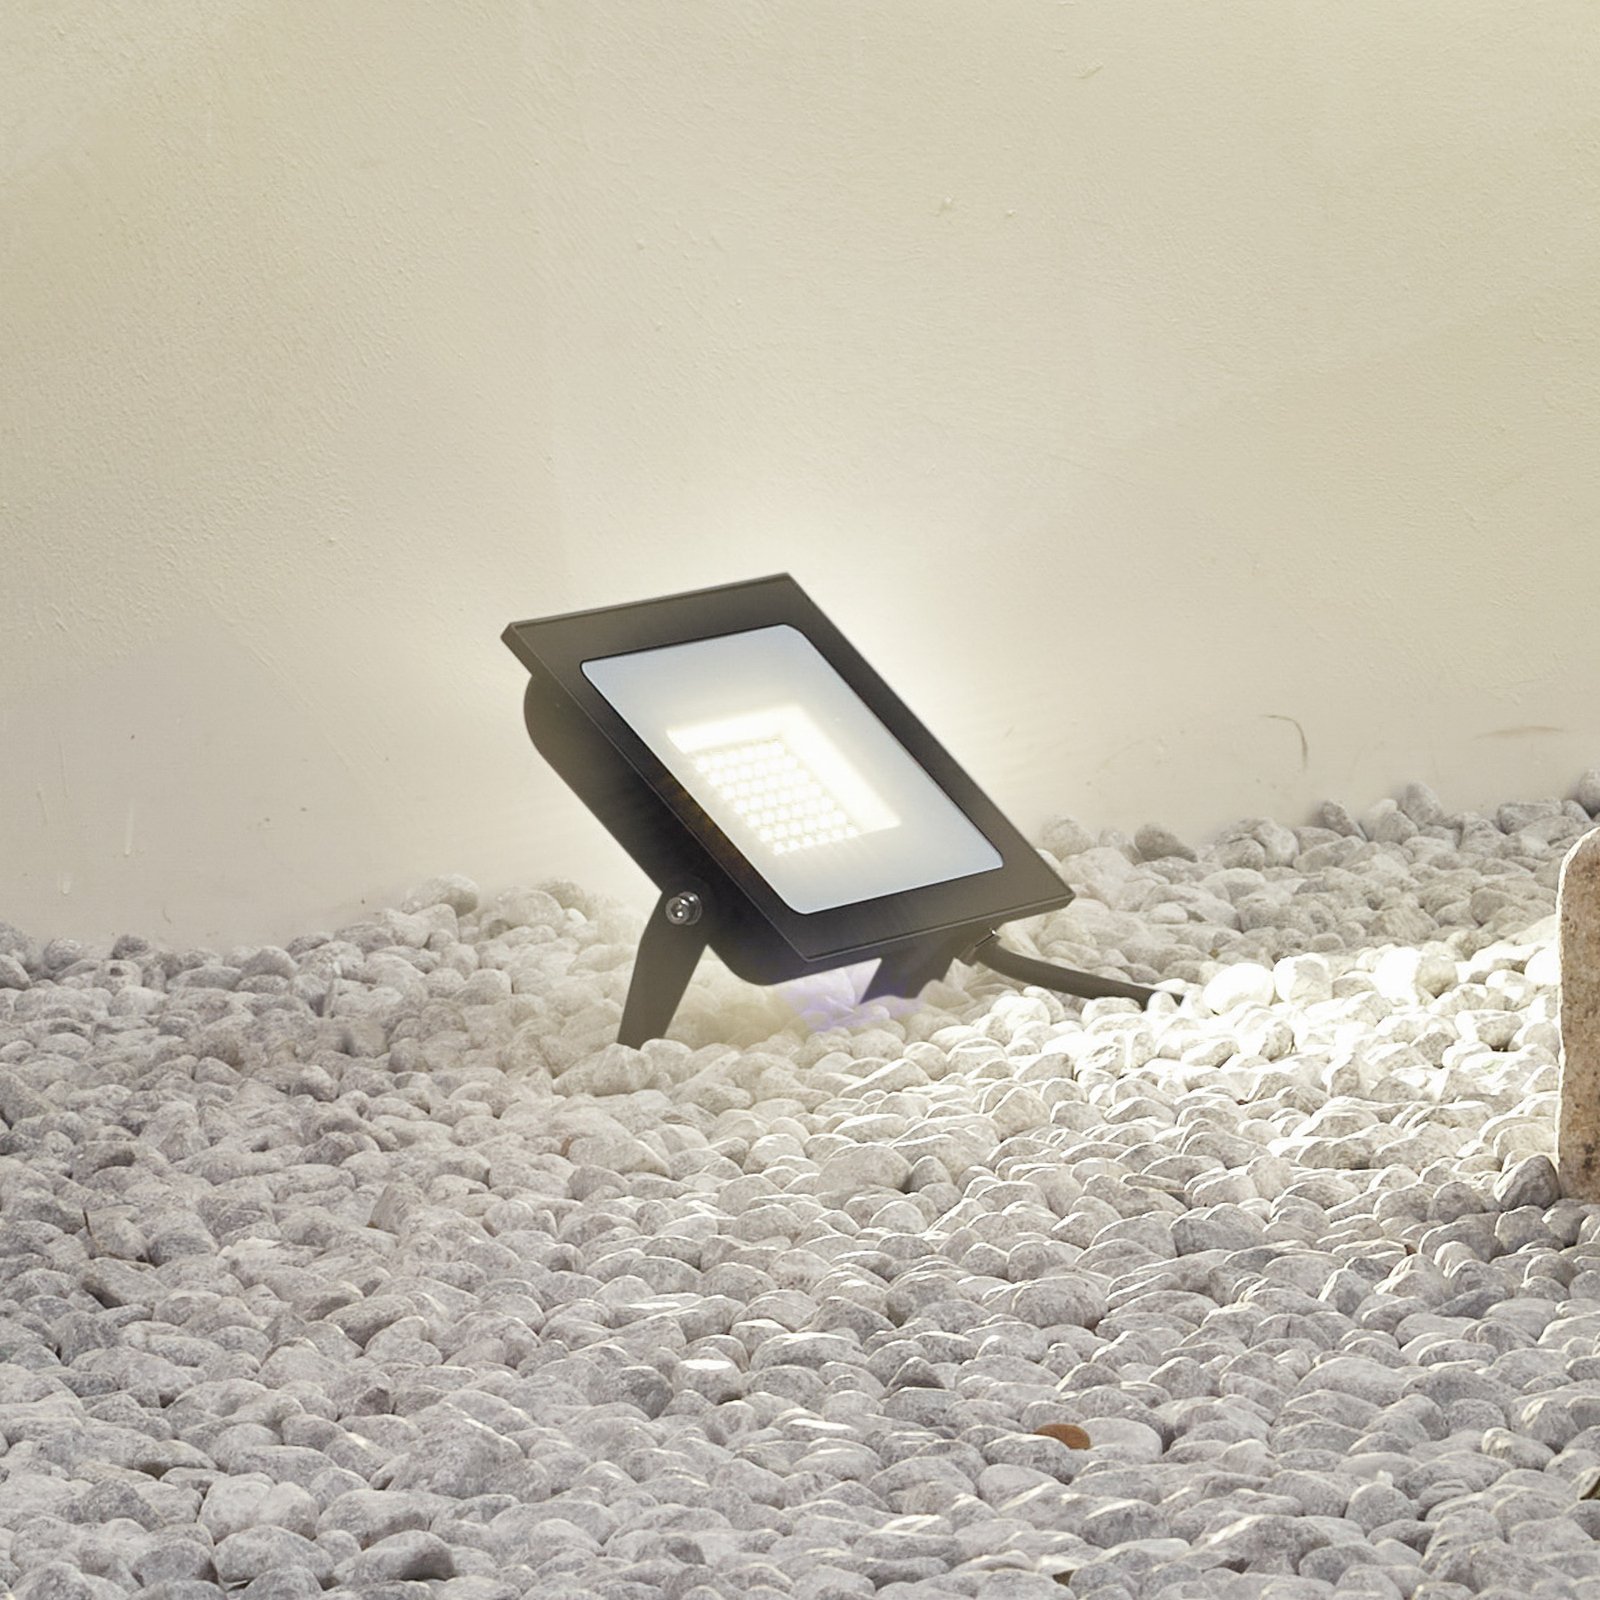 Prios LED projetor exterior Maikel, 50W, 4000lm, alumínio